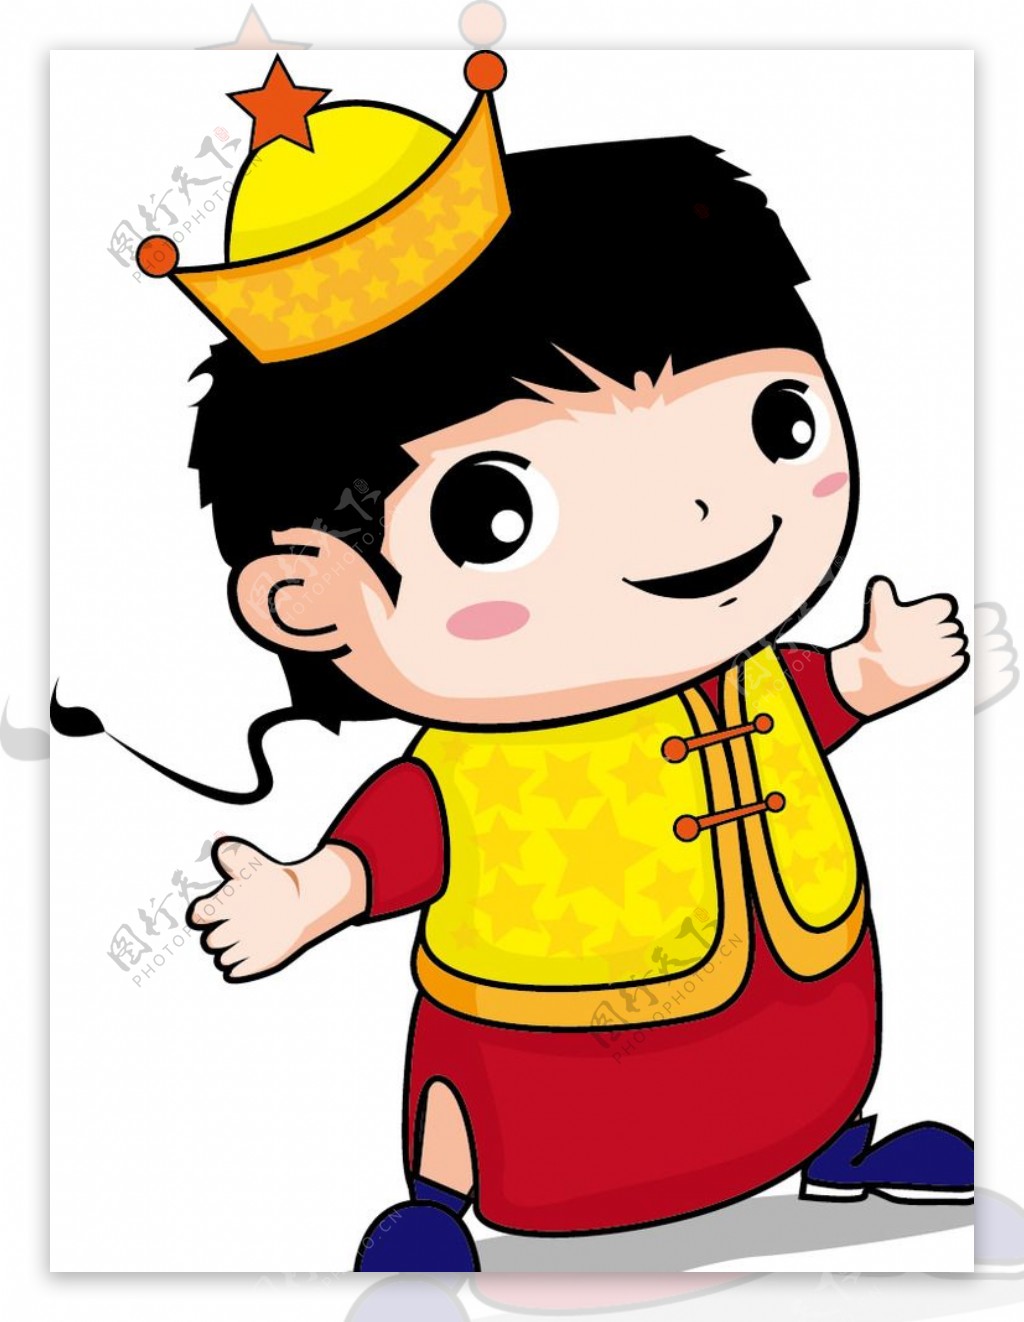 原创卡通快乐中国小王子图片